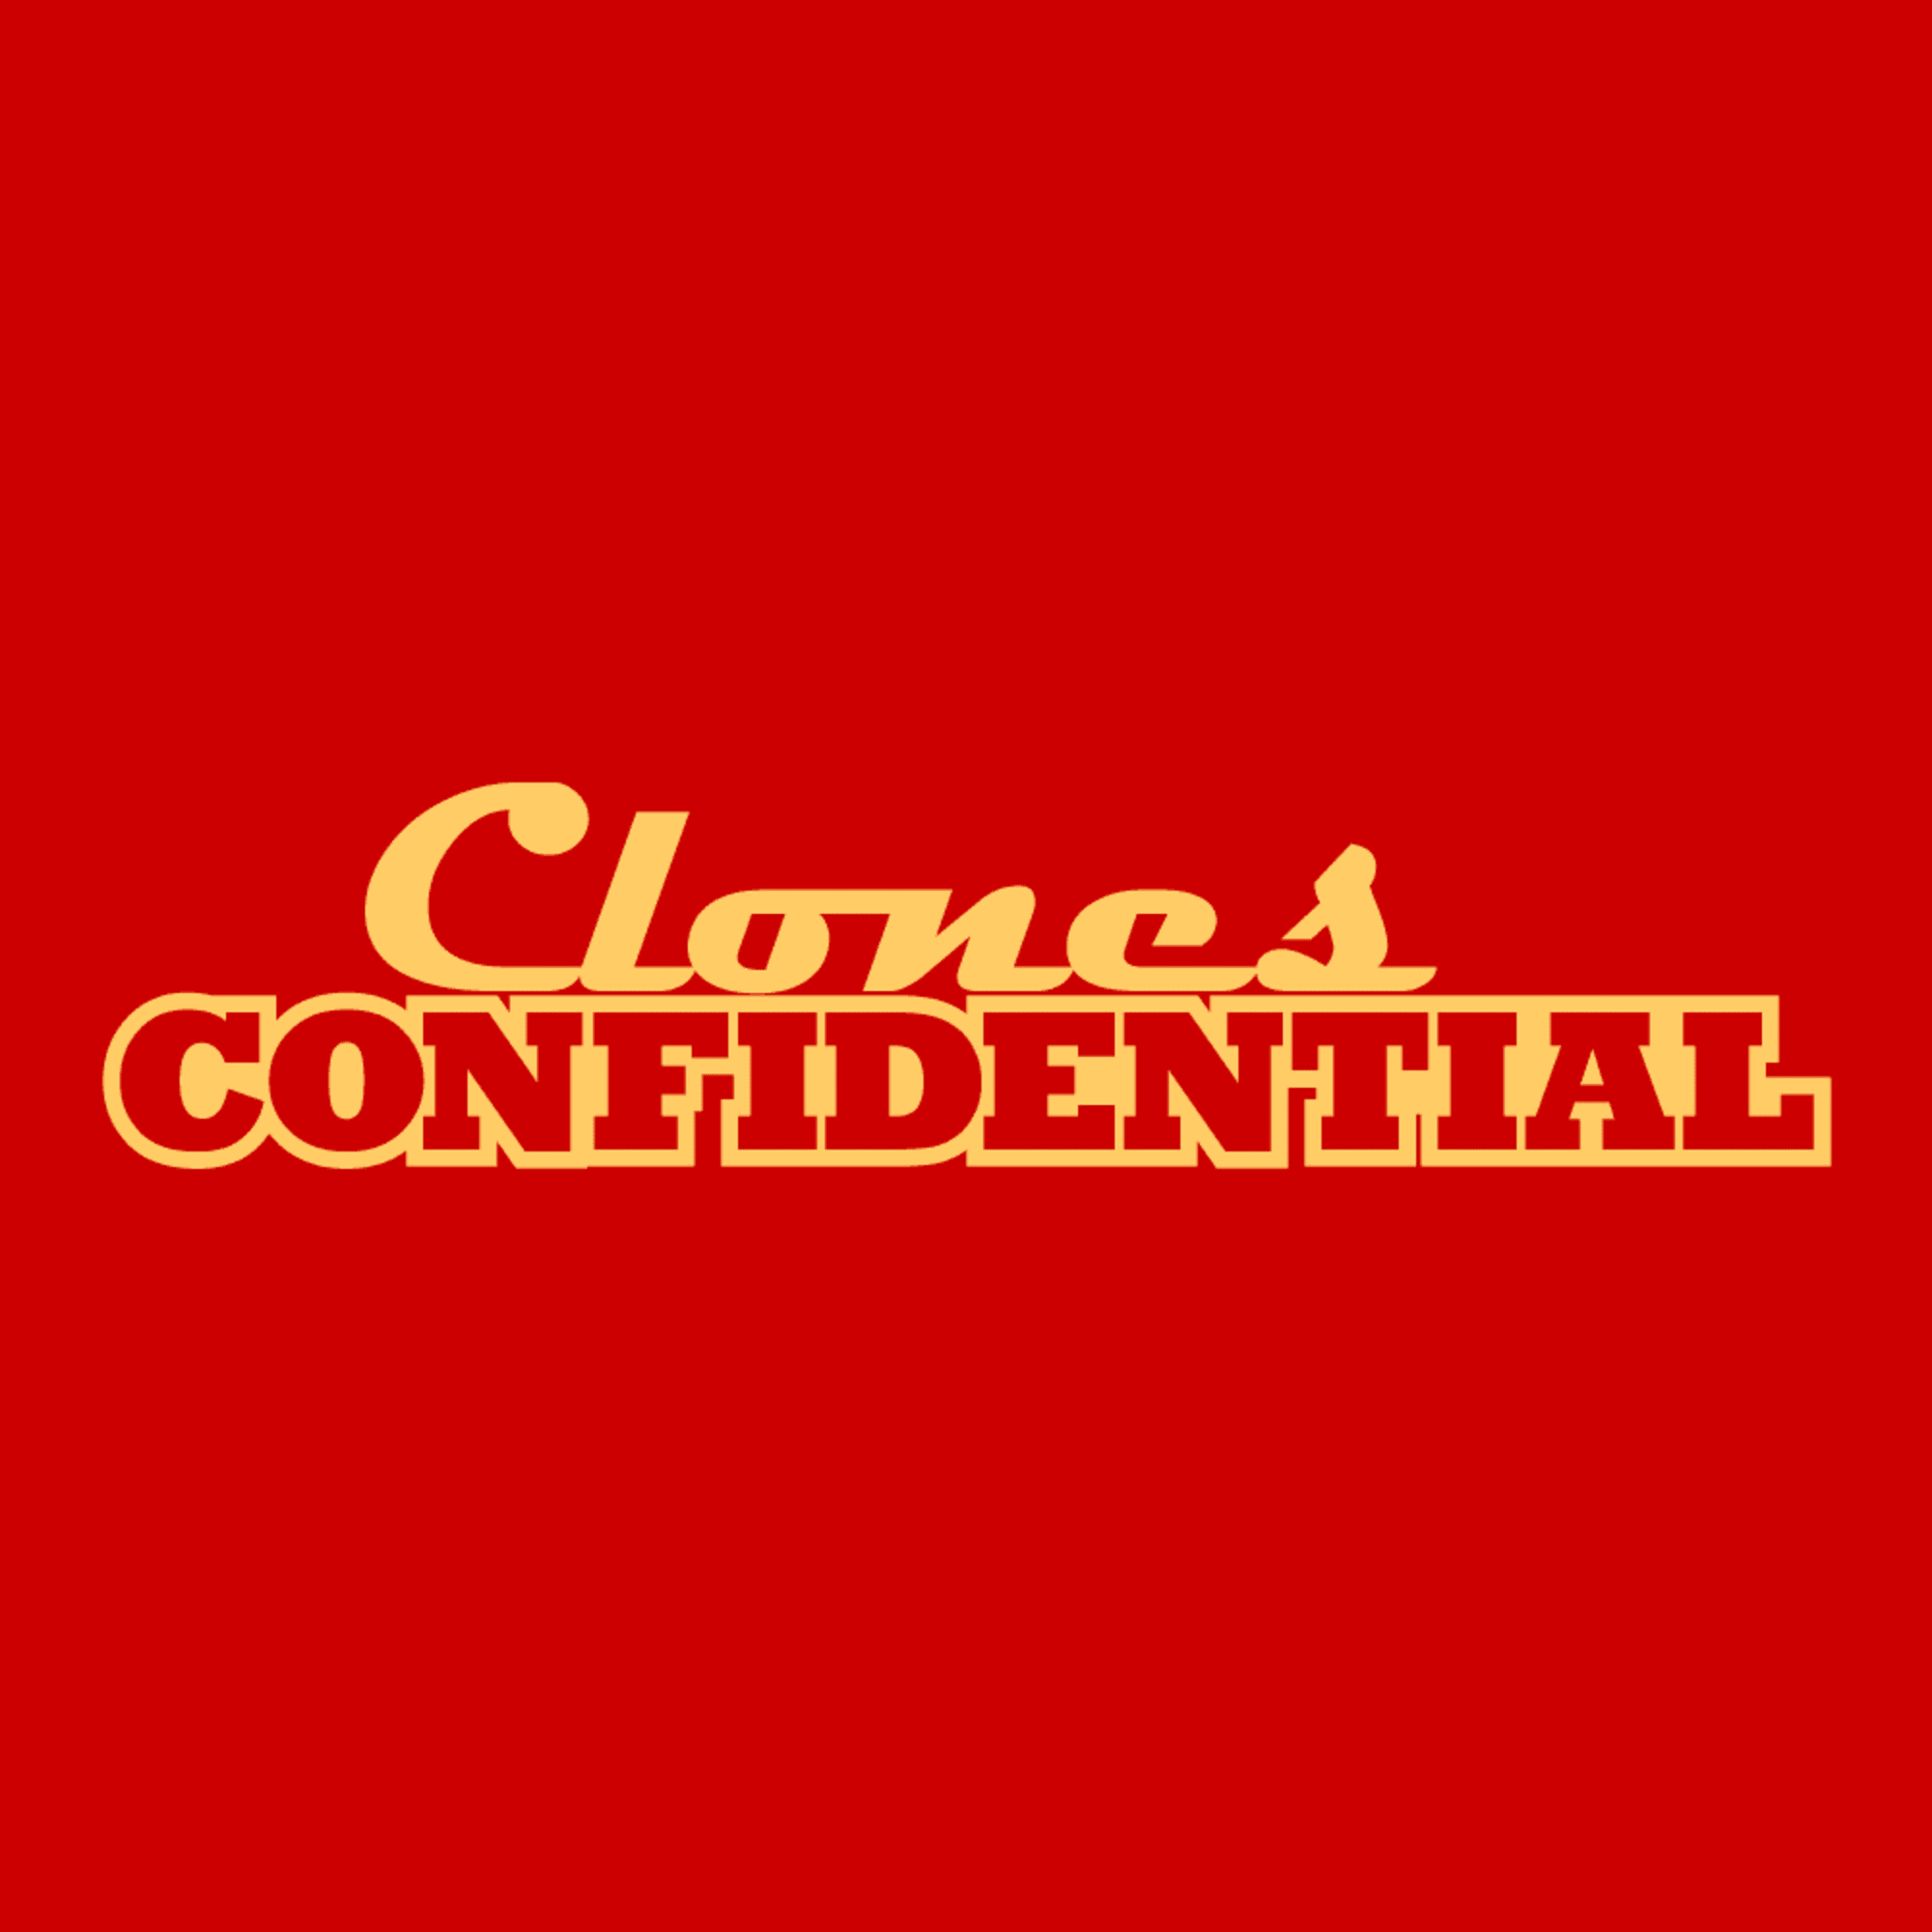 (c) Clonesconfidential.com